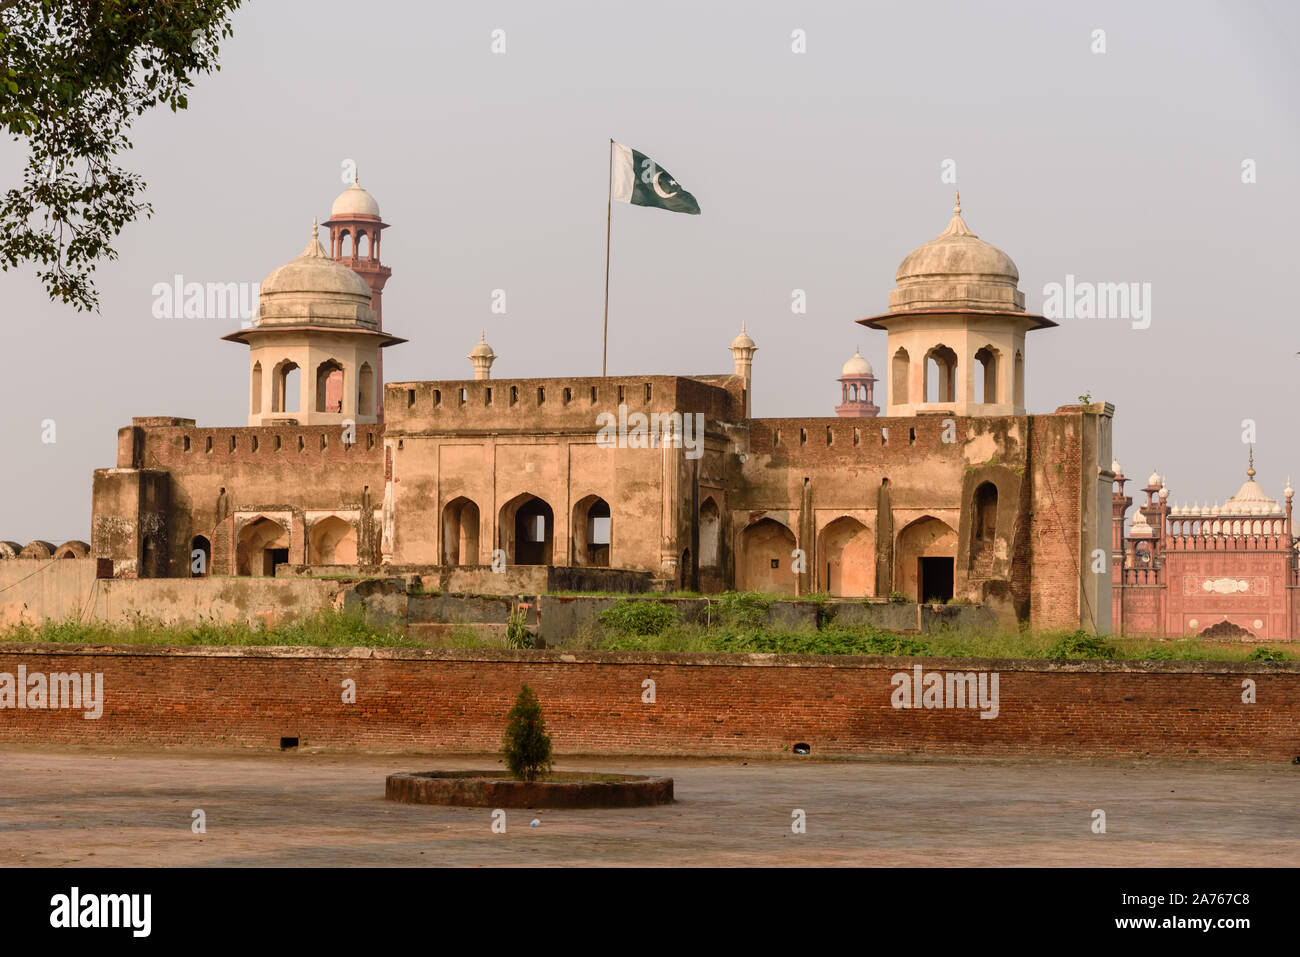 LAHORE, PAKISTAN -SEP 23, 2019:Hazuri Bagh Baradari, entre la mosquée Badshahi et fort de Lahore, Pakistan, Lahore Banque D'Images